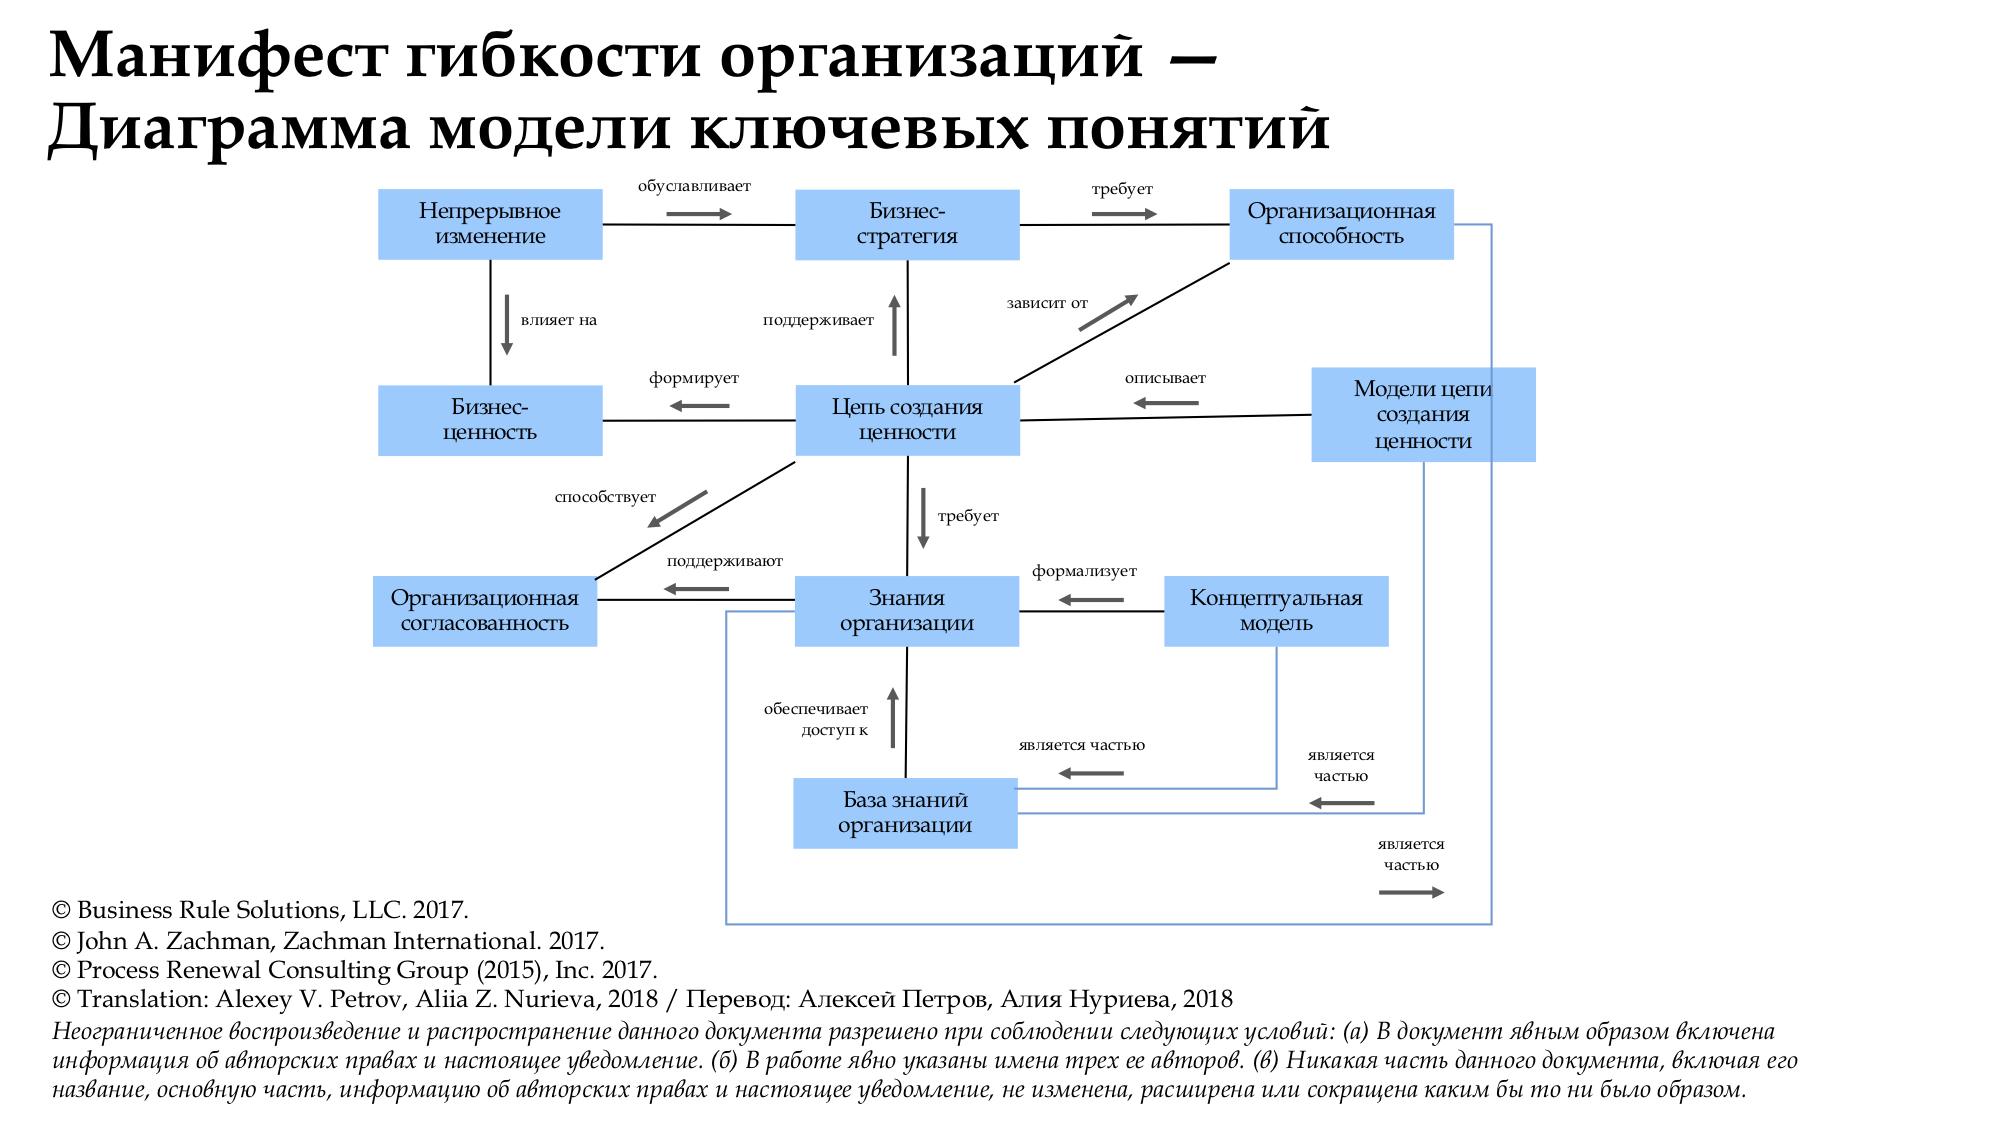  гибкости организаций Диаграмма модели ключевых понятий Concept Model of Manifesto RUSJPEG